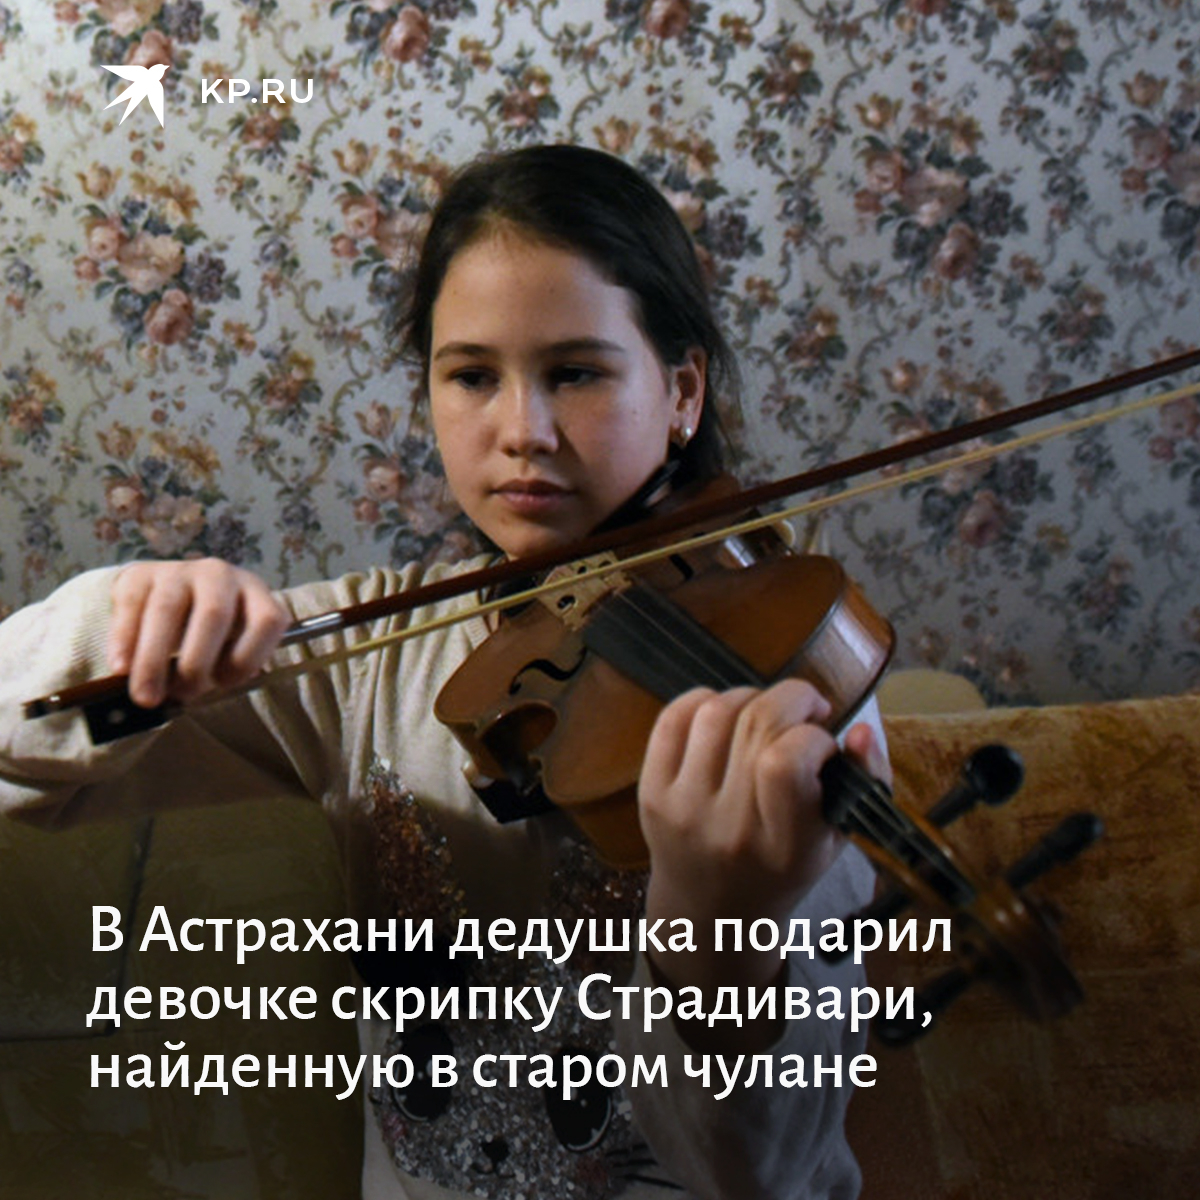 Передача о детях вундеркиндах в России маленькая скрипачка. Передача о самой маленькой скрипачке в России. Как любить свою скрипку. Нравится скрипка